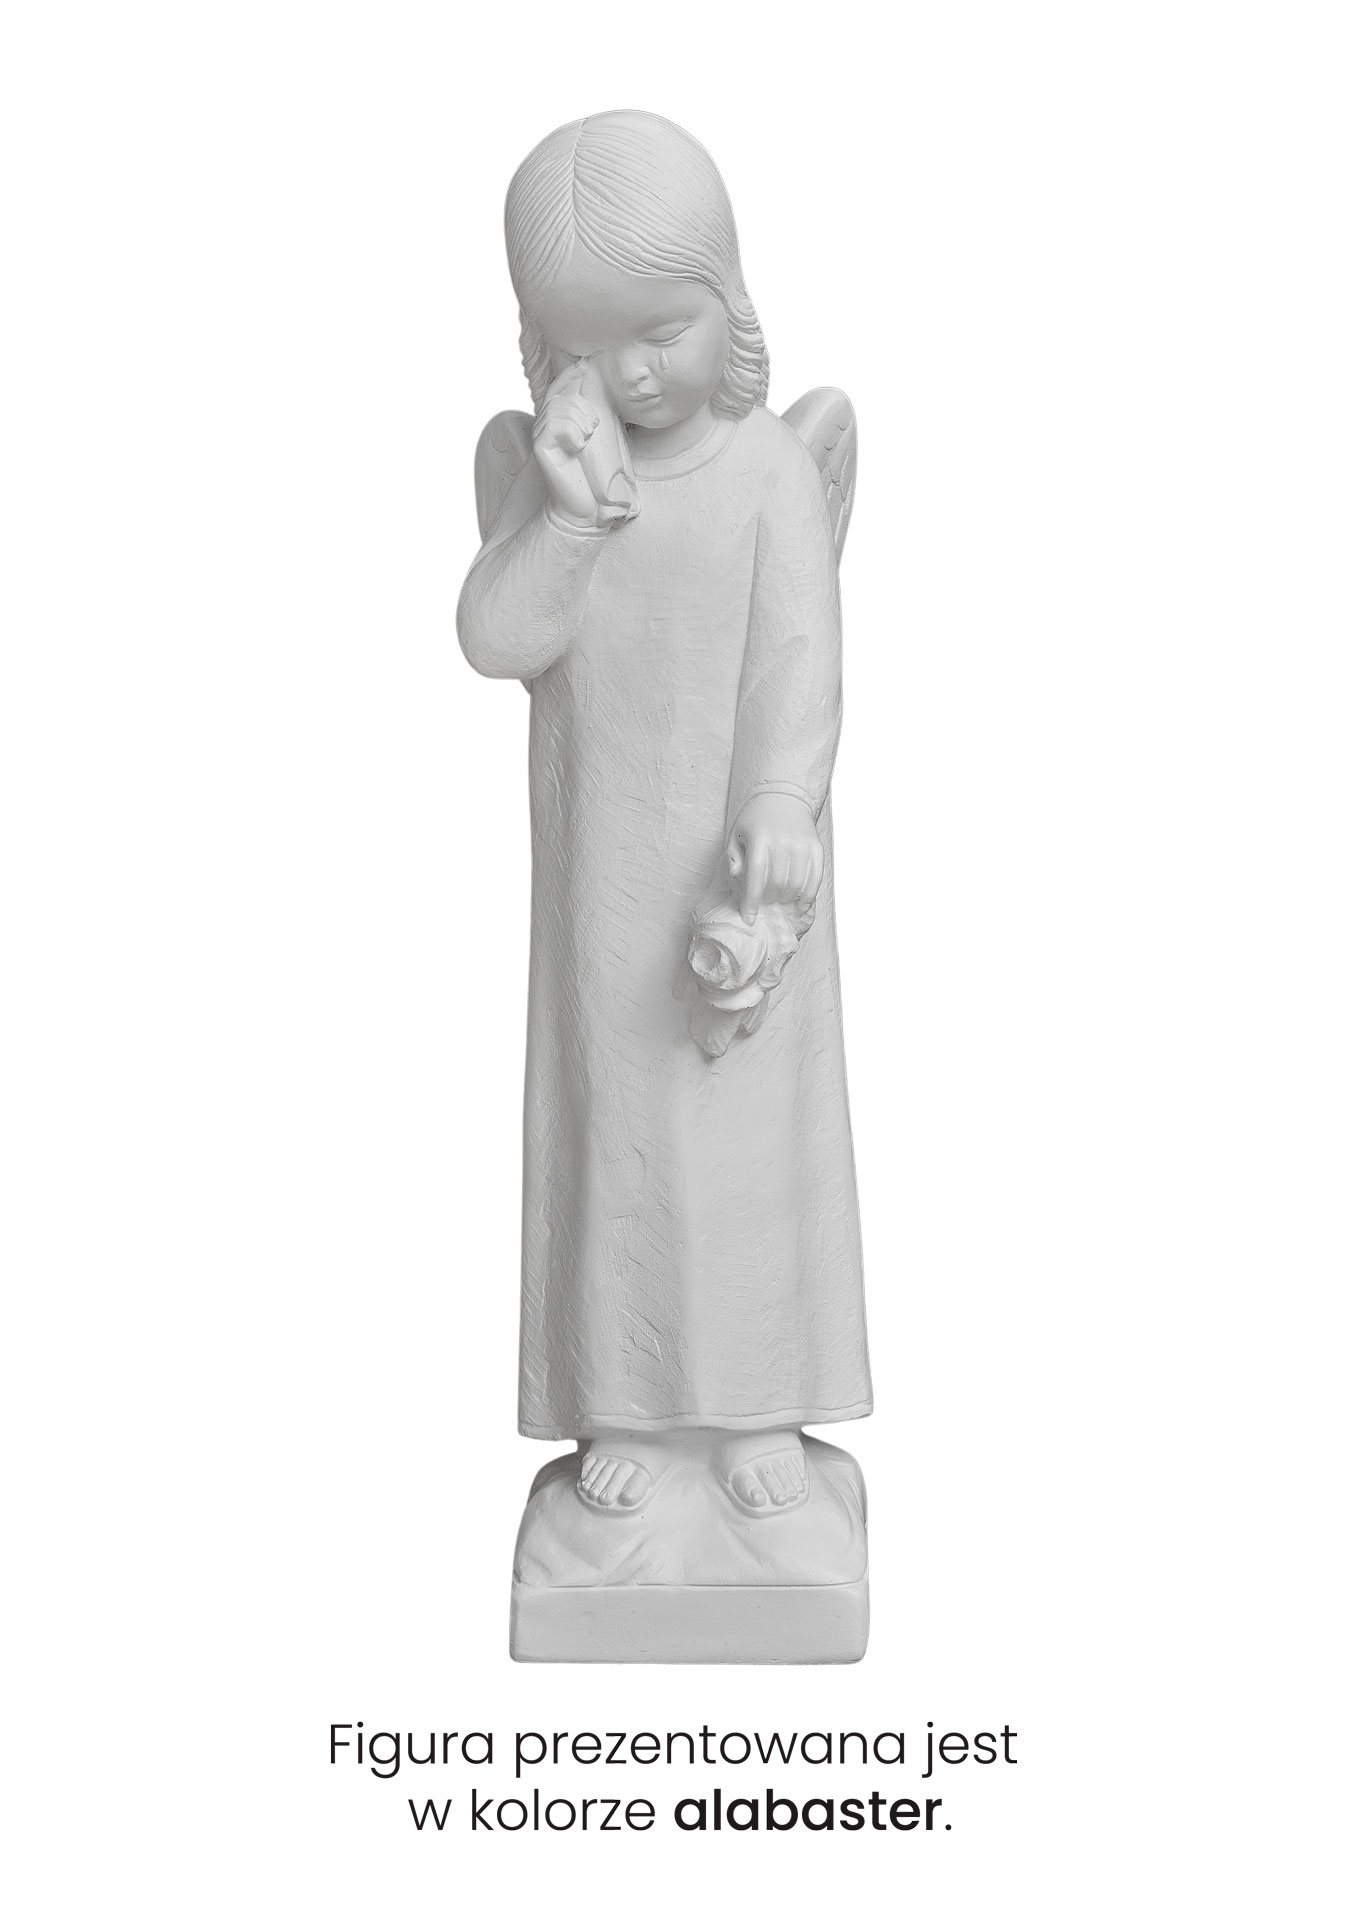 Płaczący Aniołek - Figurka nagrobkowa - 50 cm - R 385